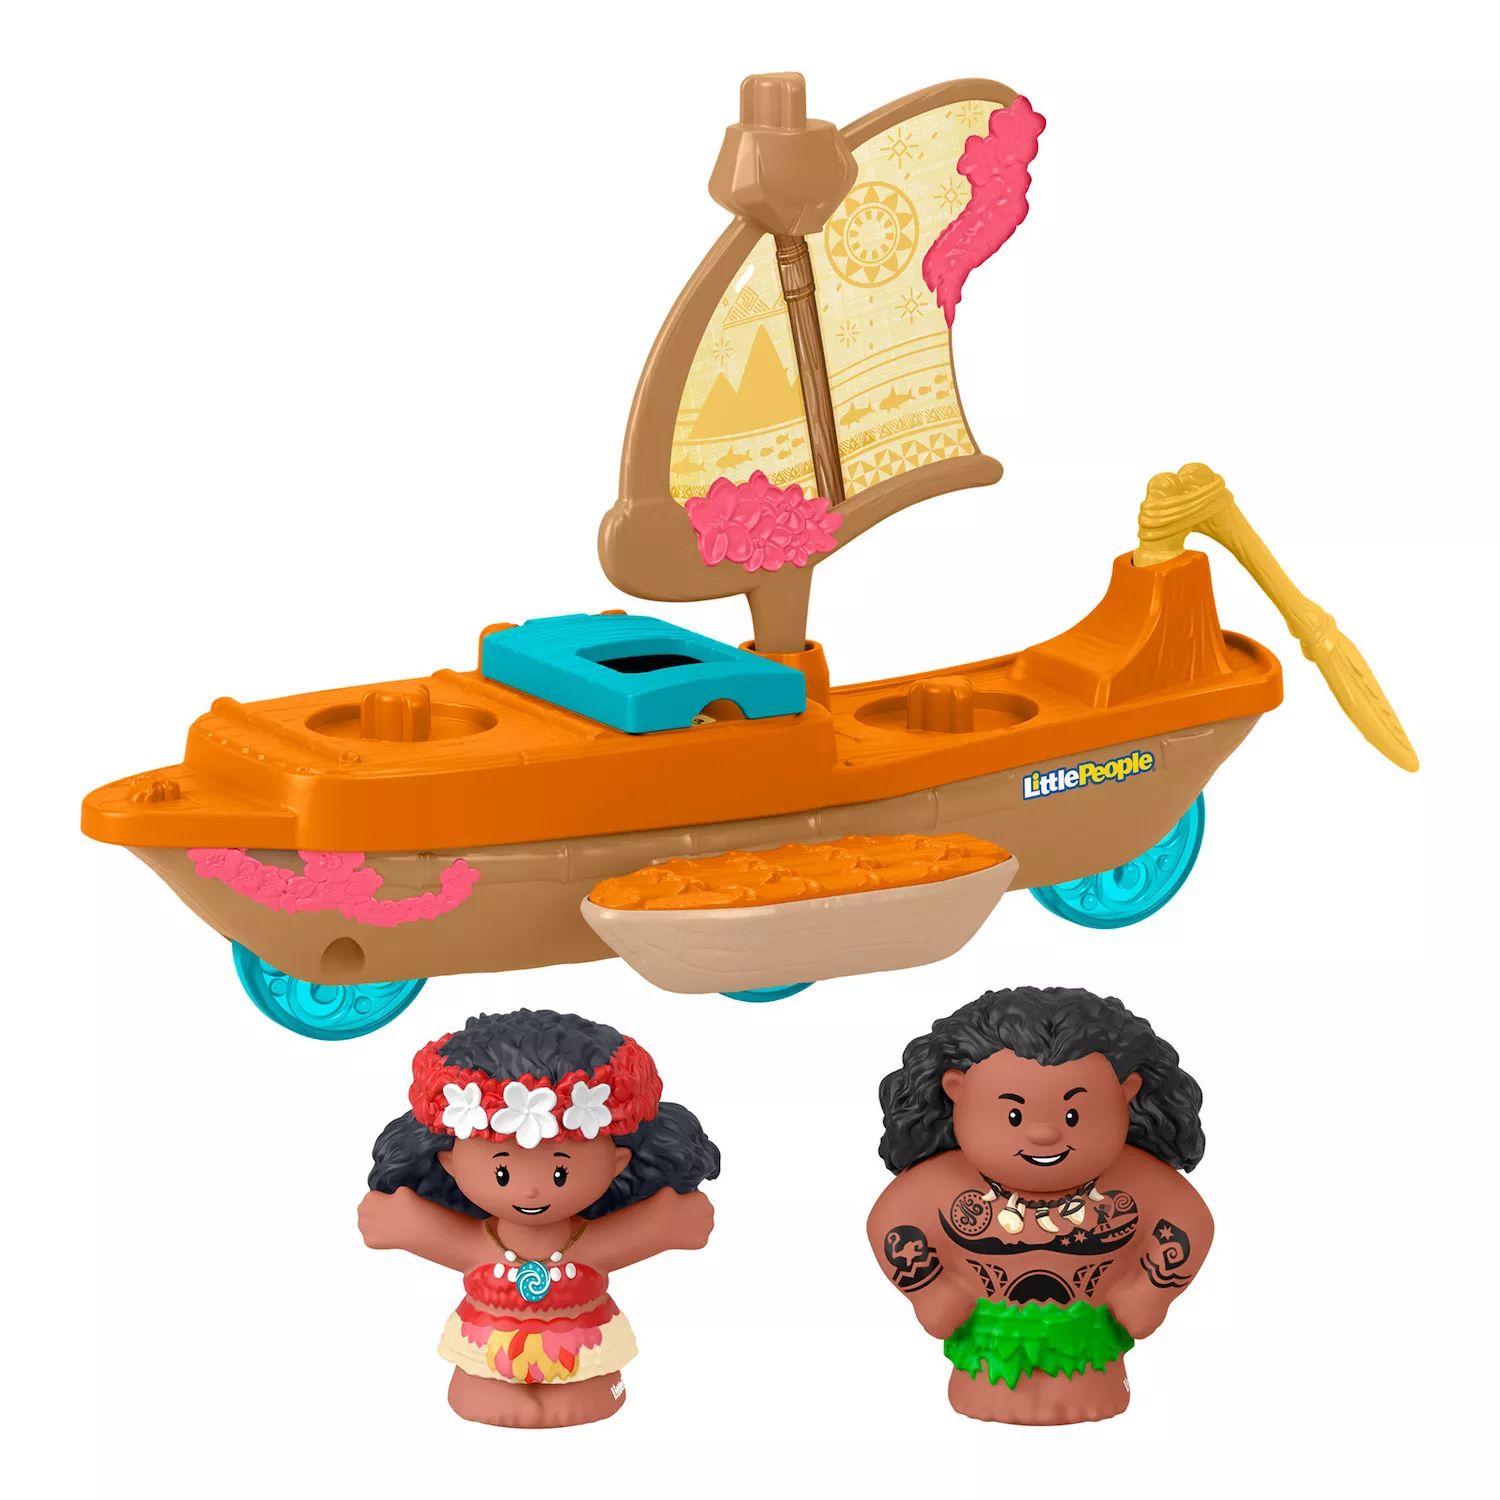 Набор каноэ и фигурок Disney's Moana & Maui Little People от Fisher-Price Little People